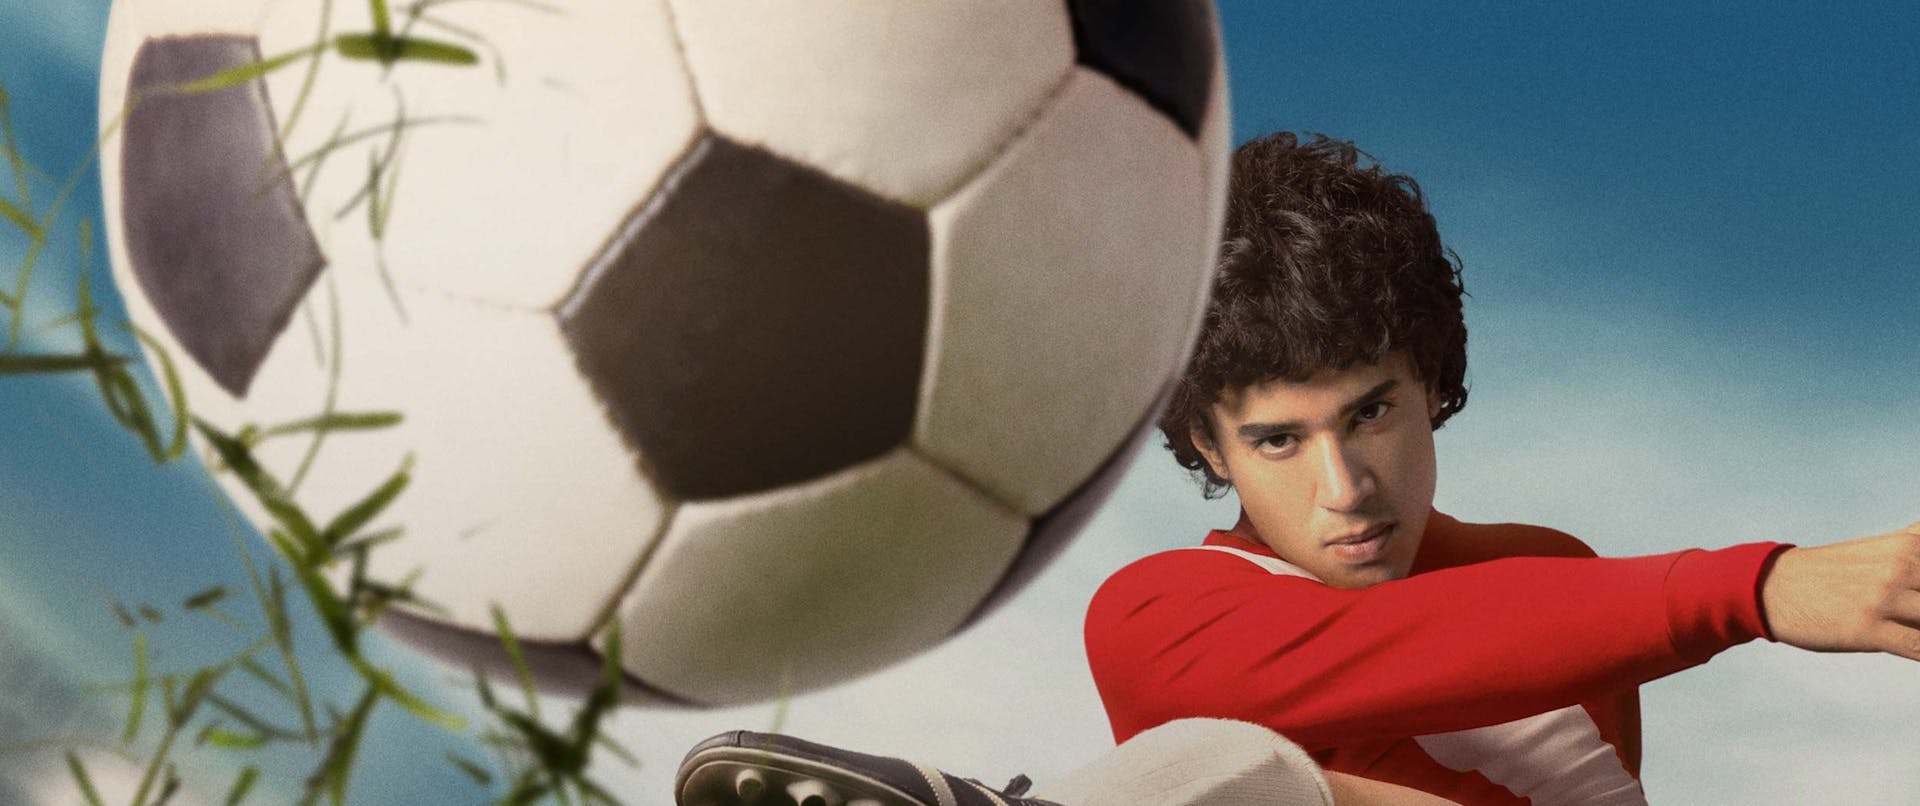 Amazon Maradona DOOH Exclusividad en Via Publica con anuncios de Twitter